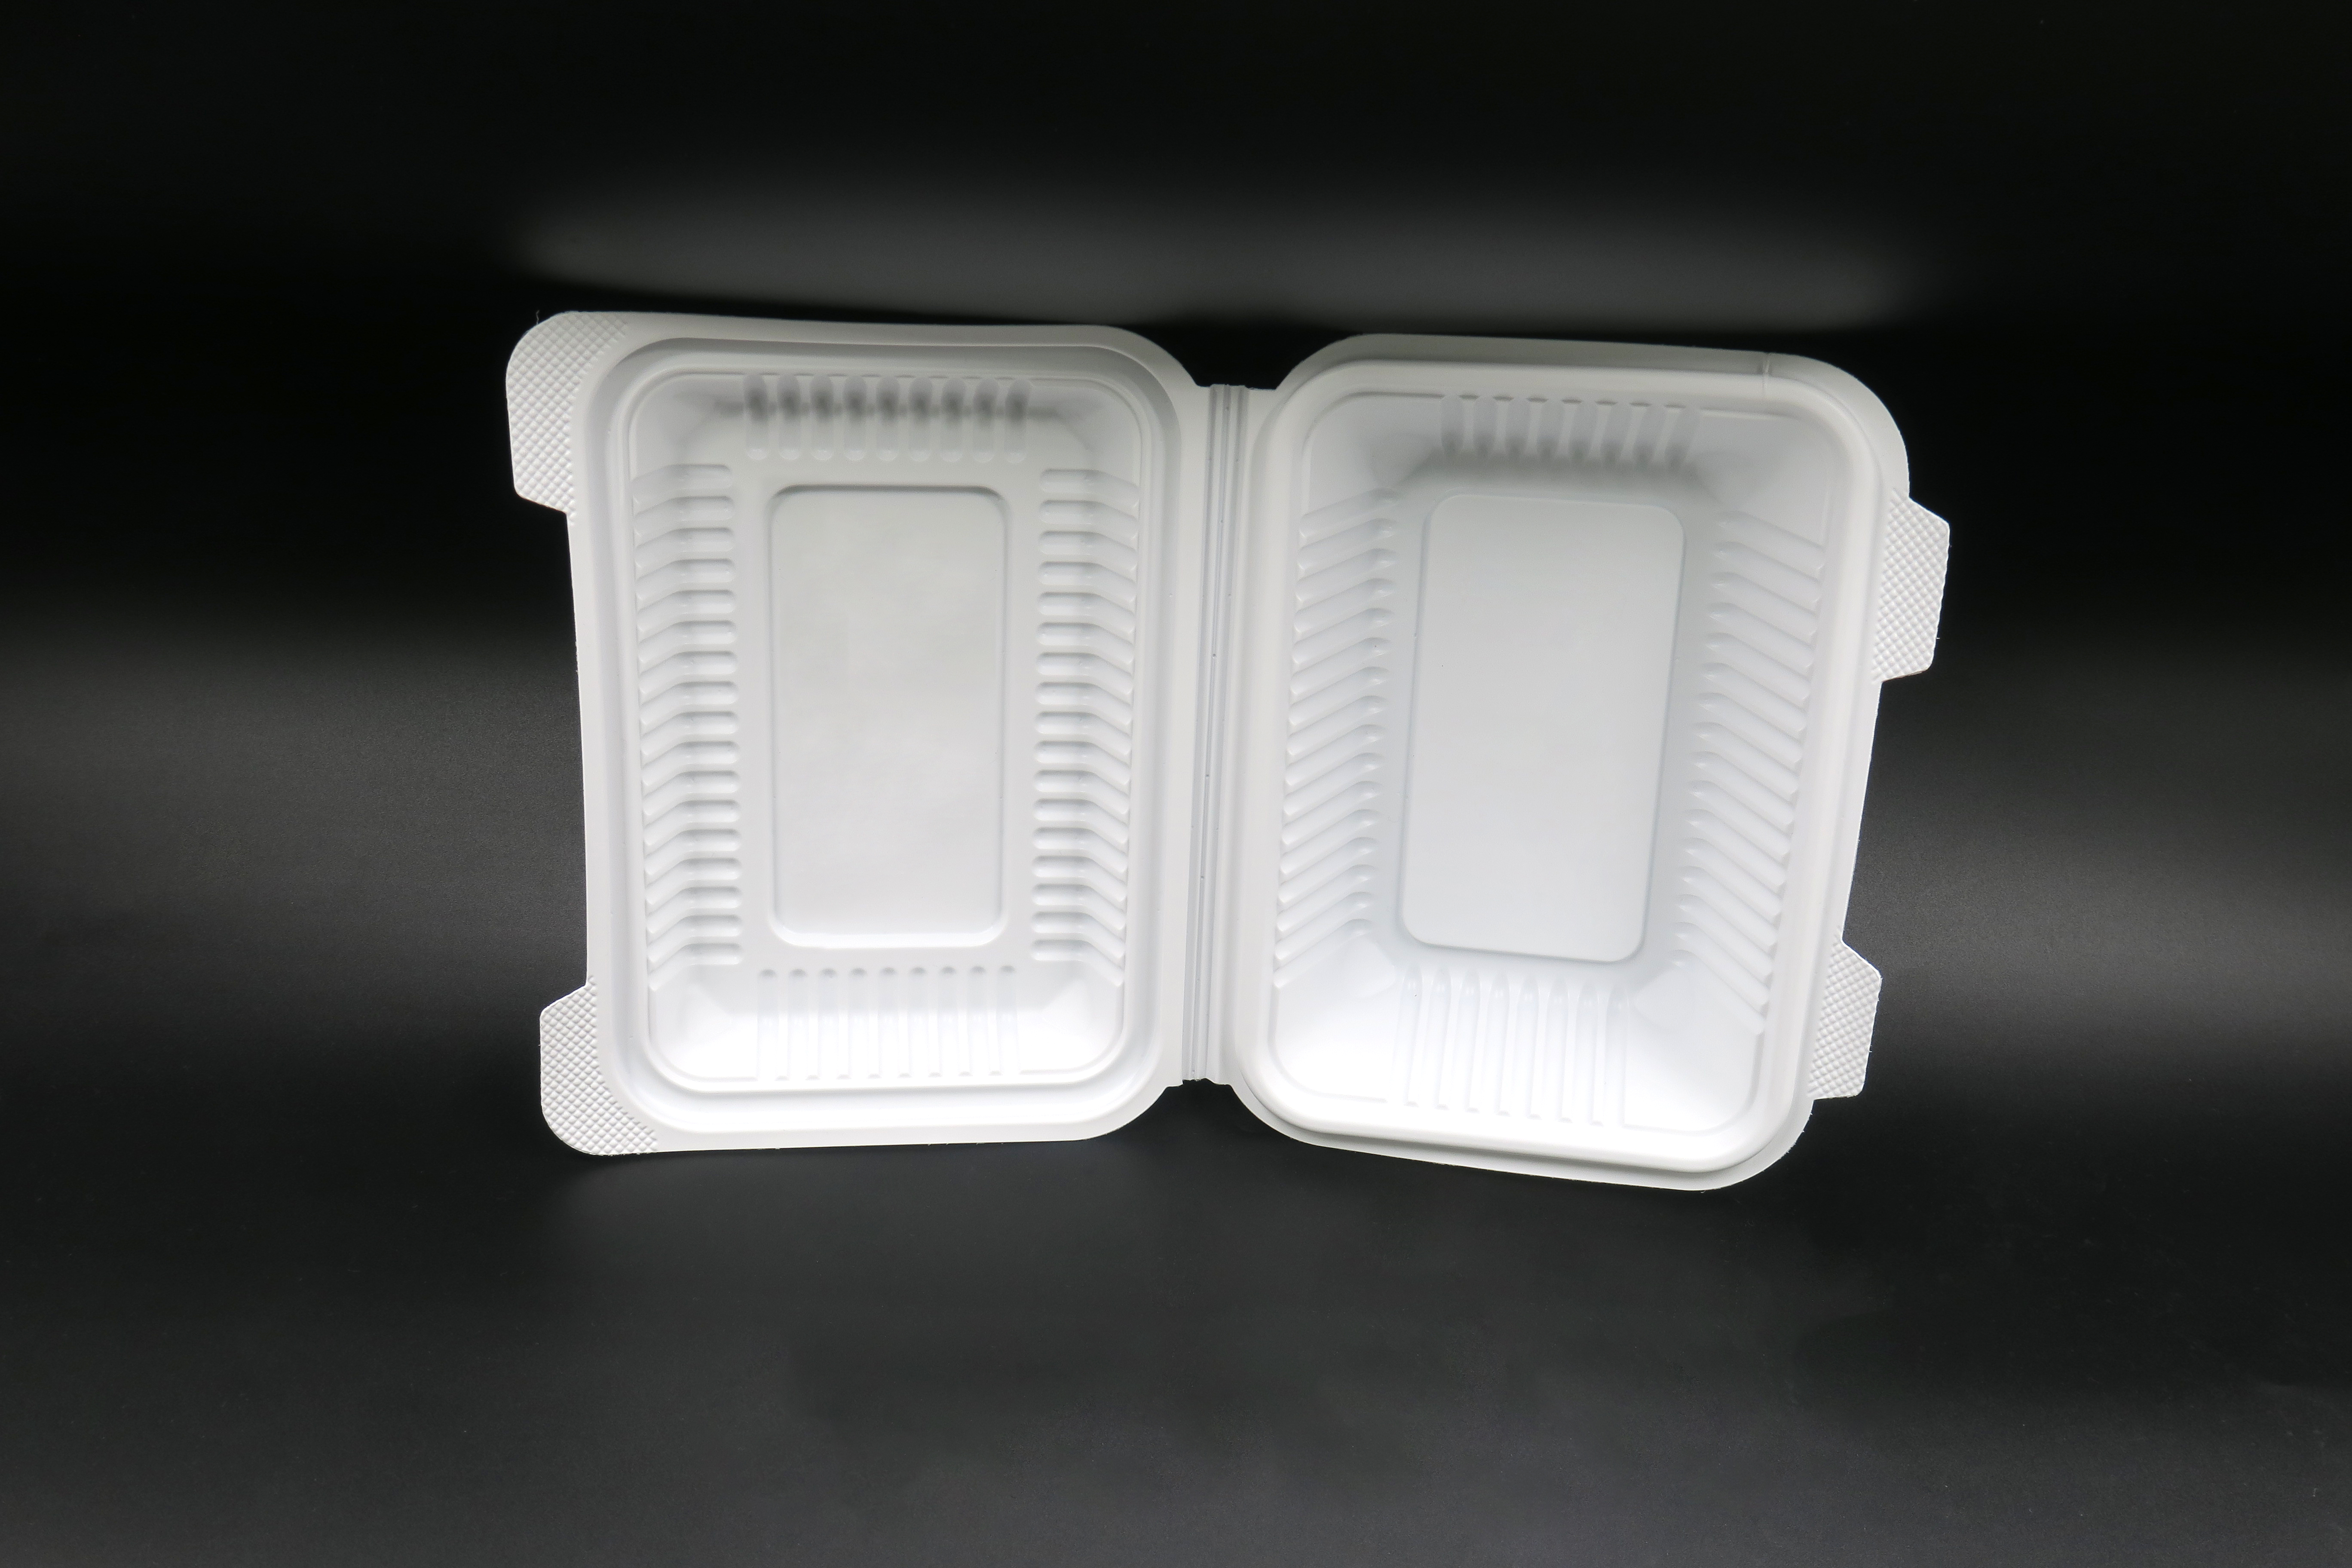 Gesunde und umweltfreundliche mikrowellengeeignete Verpackungsboxen für Restaurants